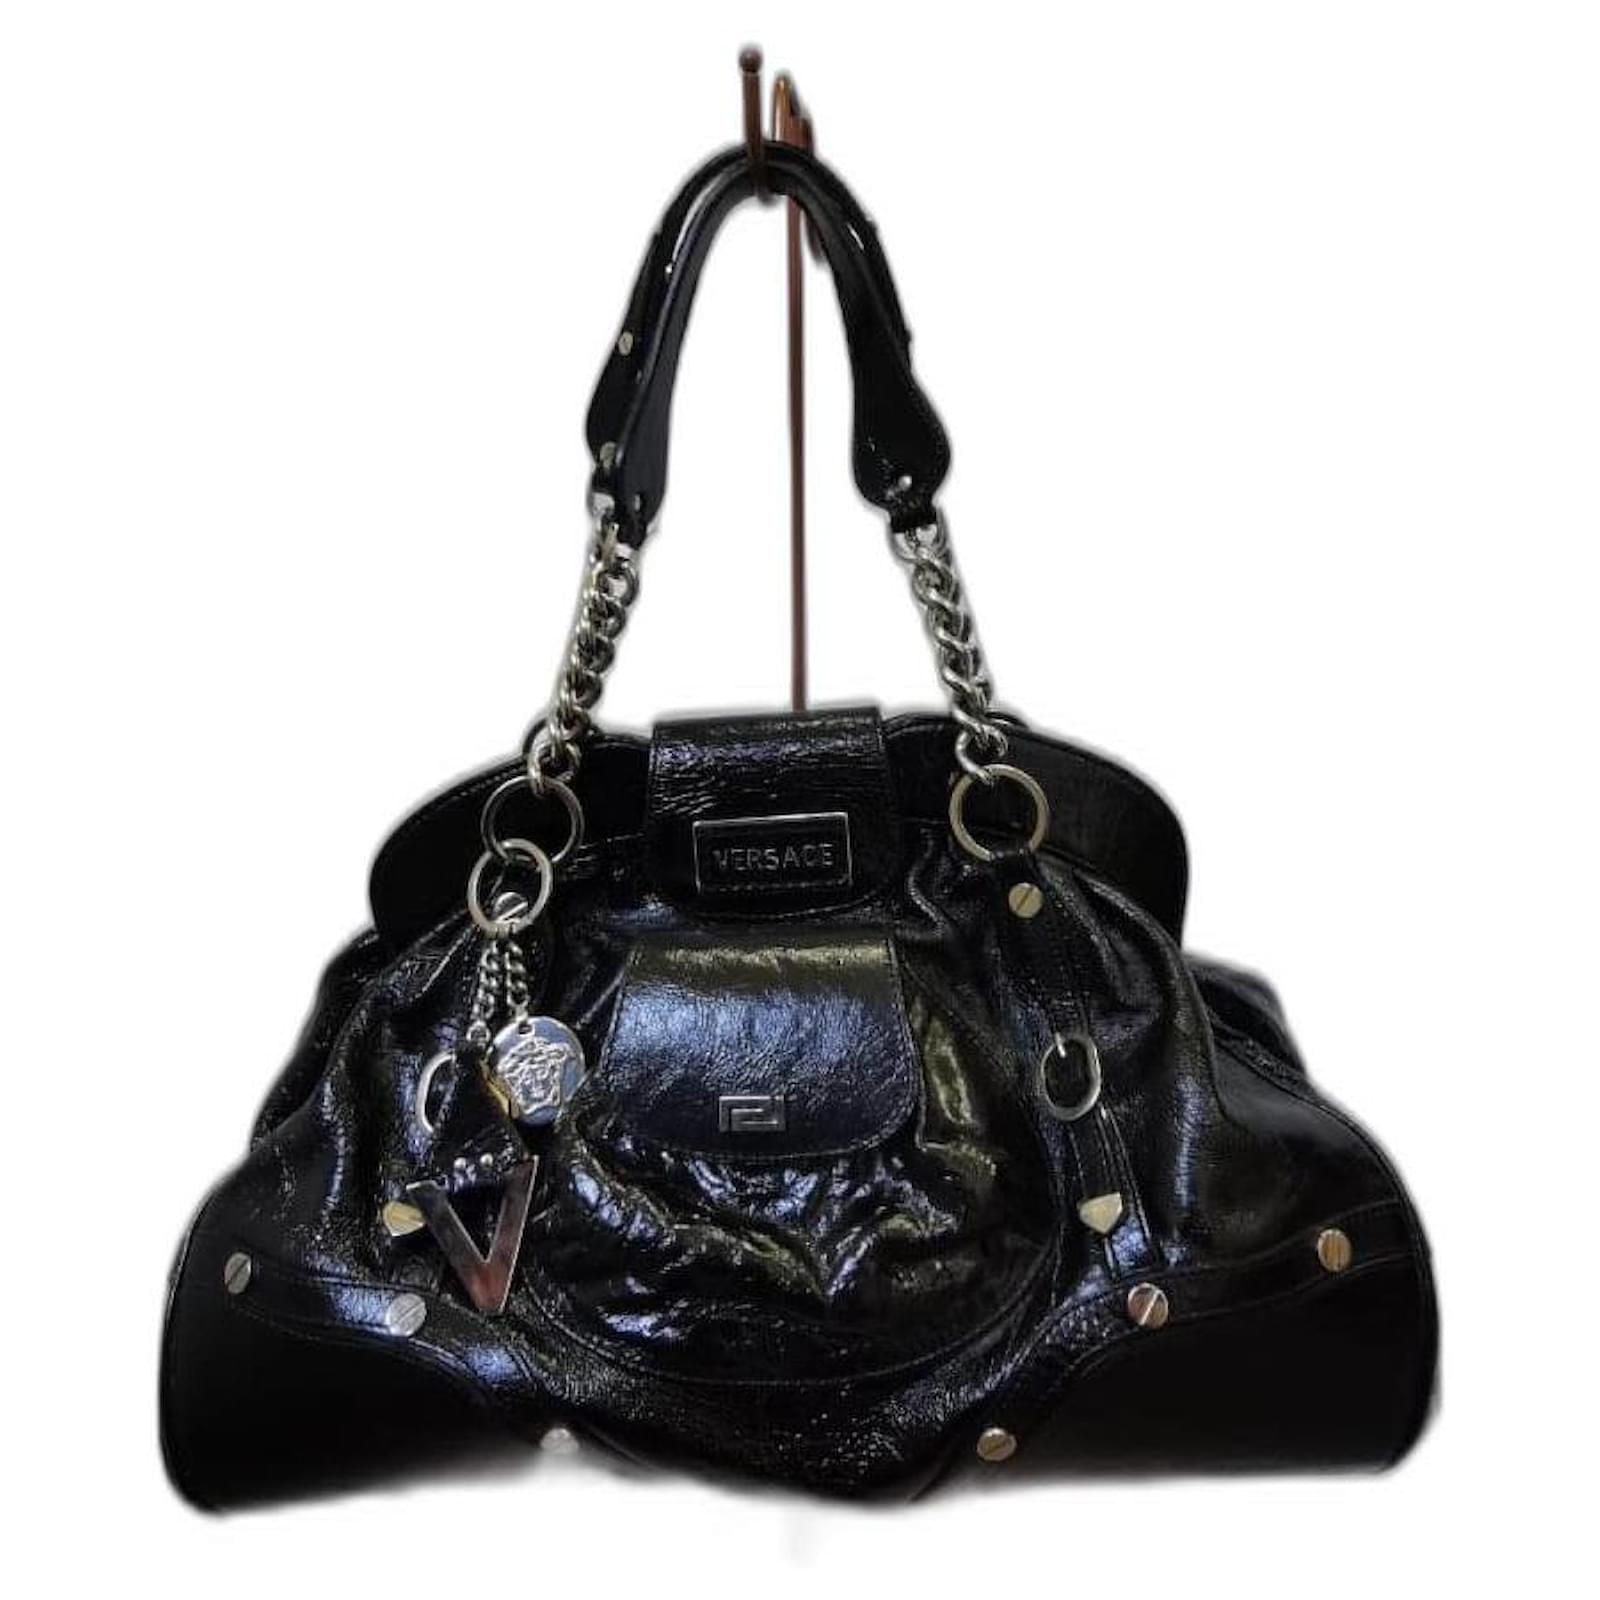 Gianni Versace Bag 